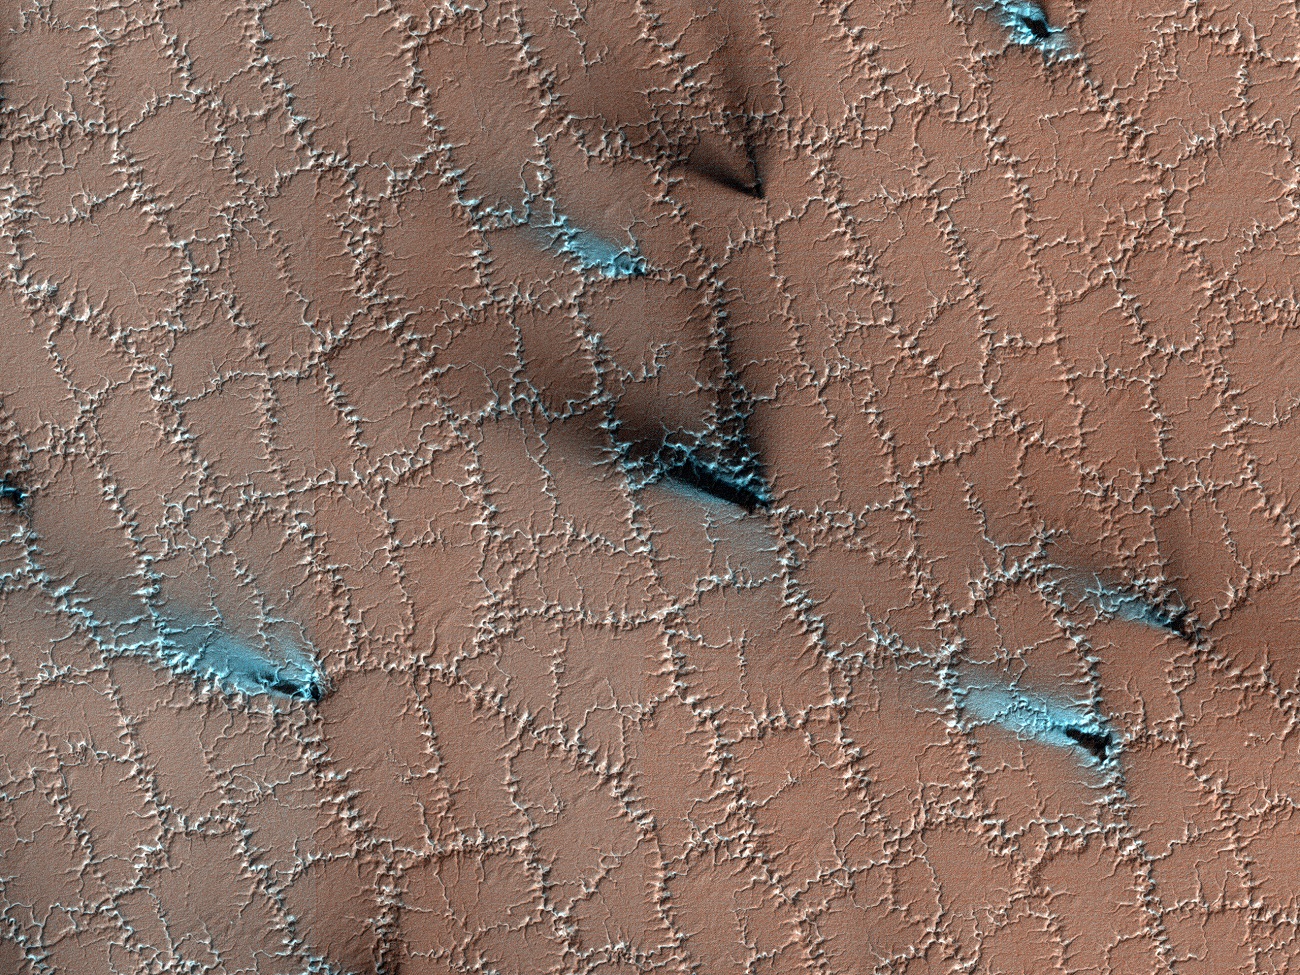 Wielokątne struktury na powierzchni Marsa. Widać je z wielu kilometrów